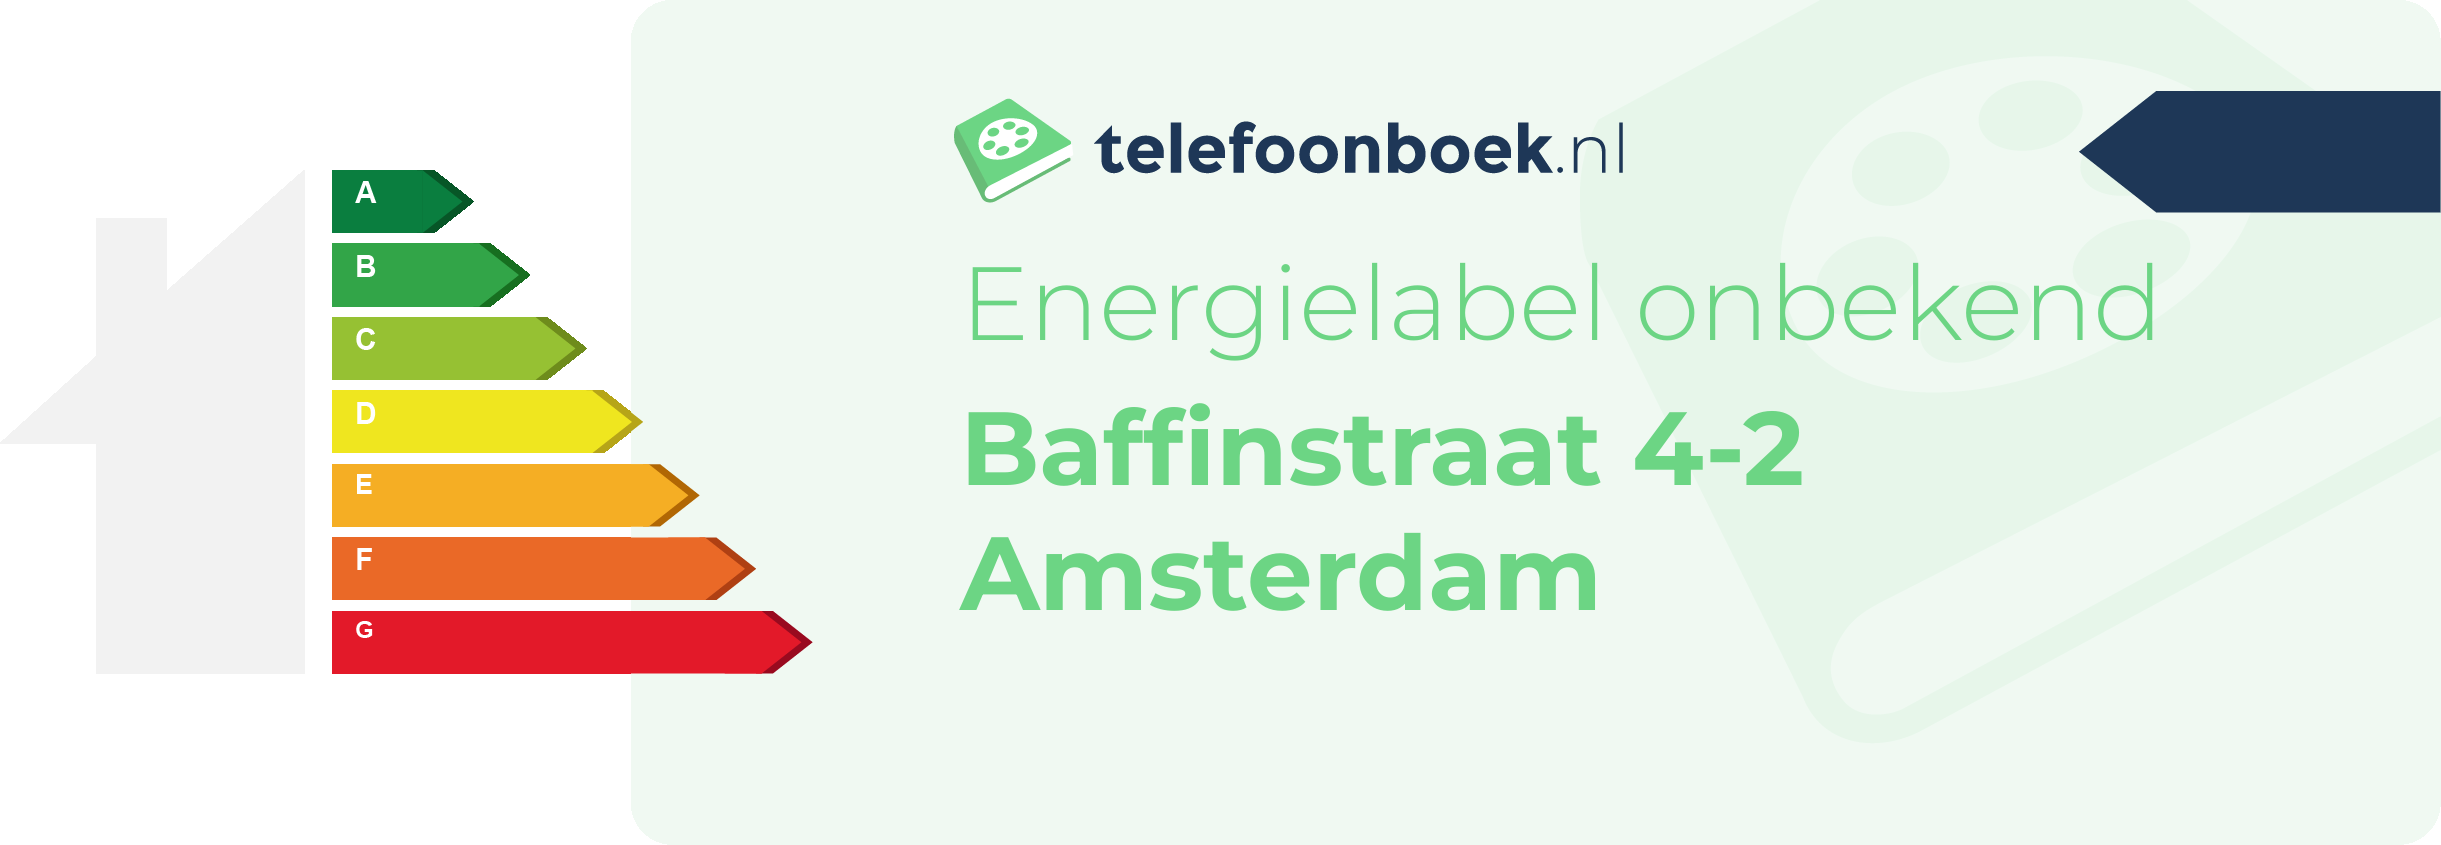 Energielabel Baffinstraat 4-2 Amsterdam